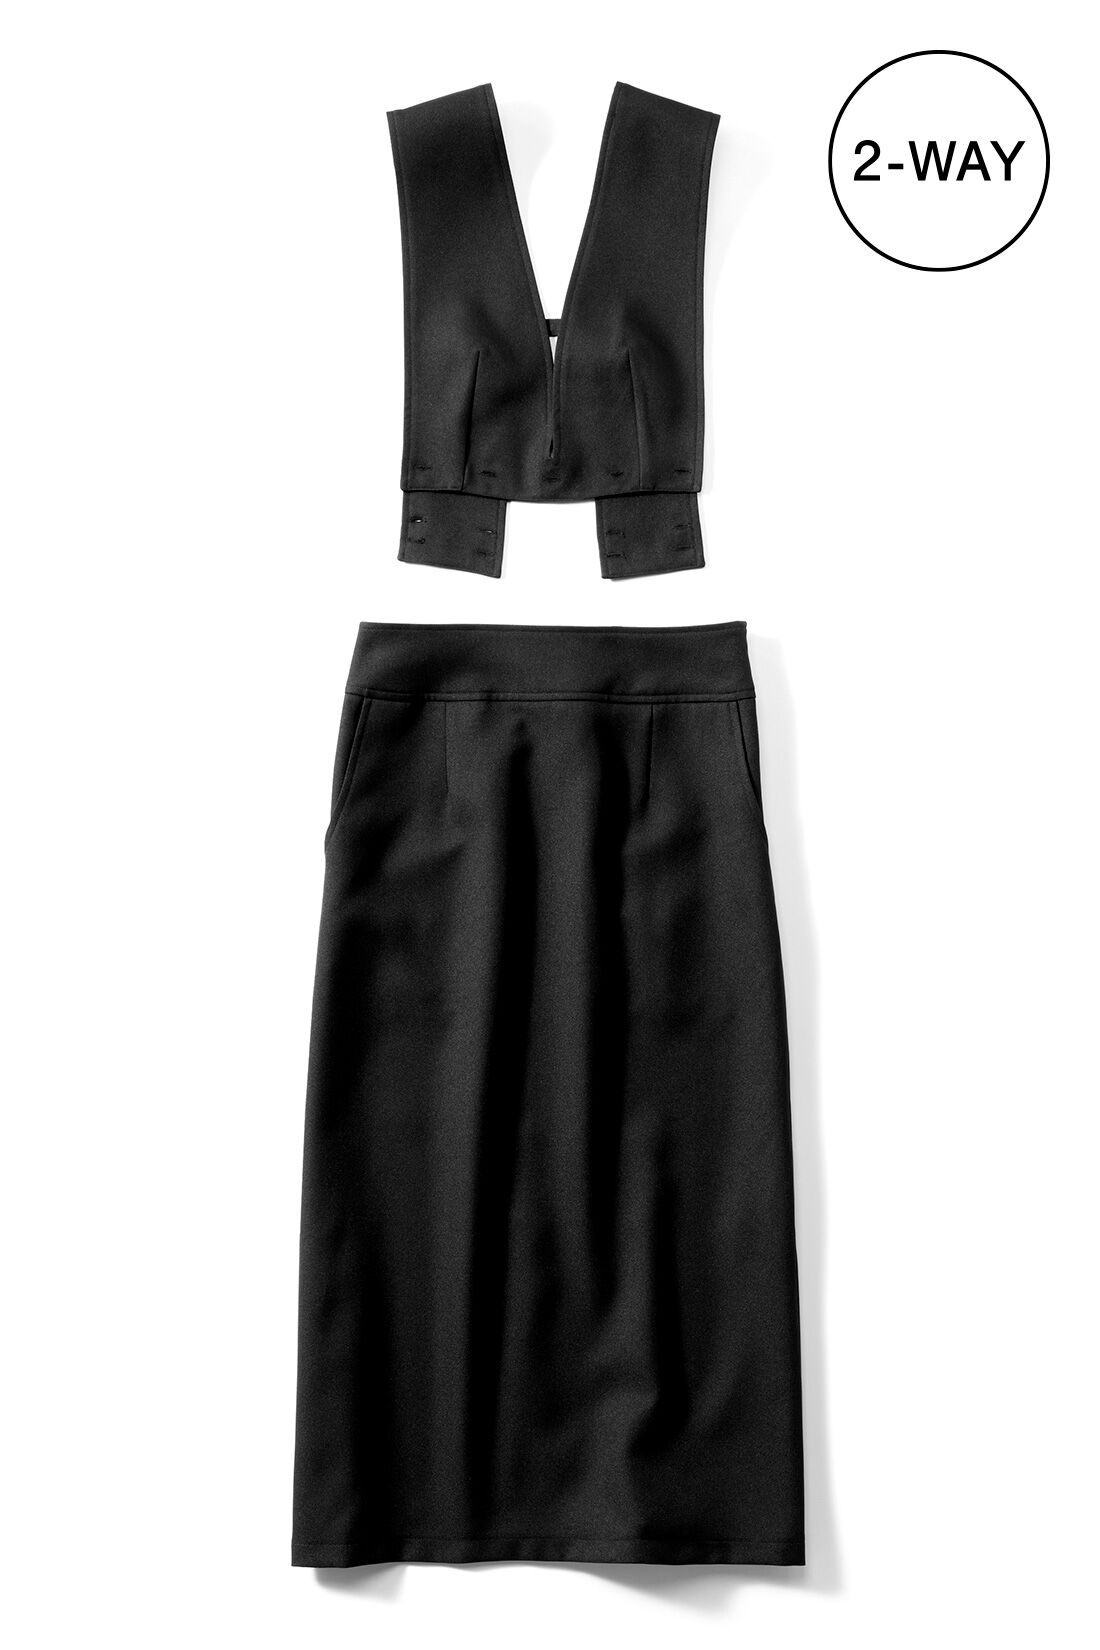 IEDIT[イディット]　着まわし広がる 2-WAY仕様がうれしい大人シルエットのジャンパースカート〈ブラック〉|※お届けするカラーとは異なります。